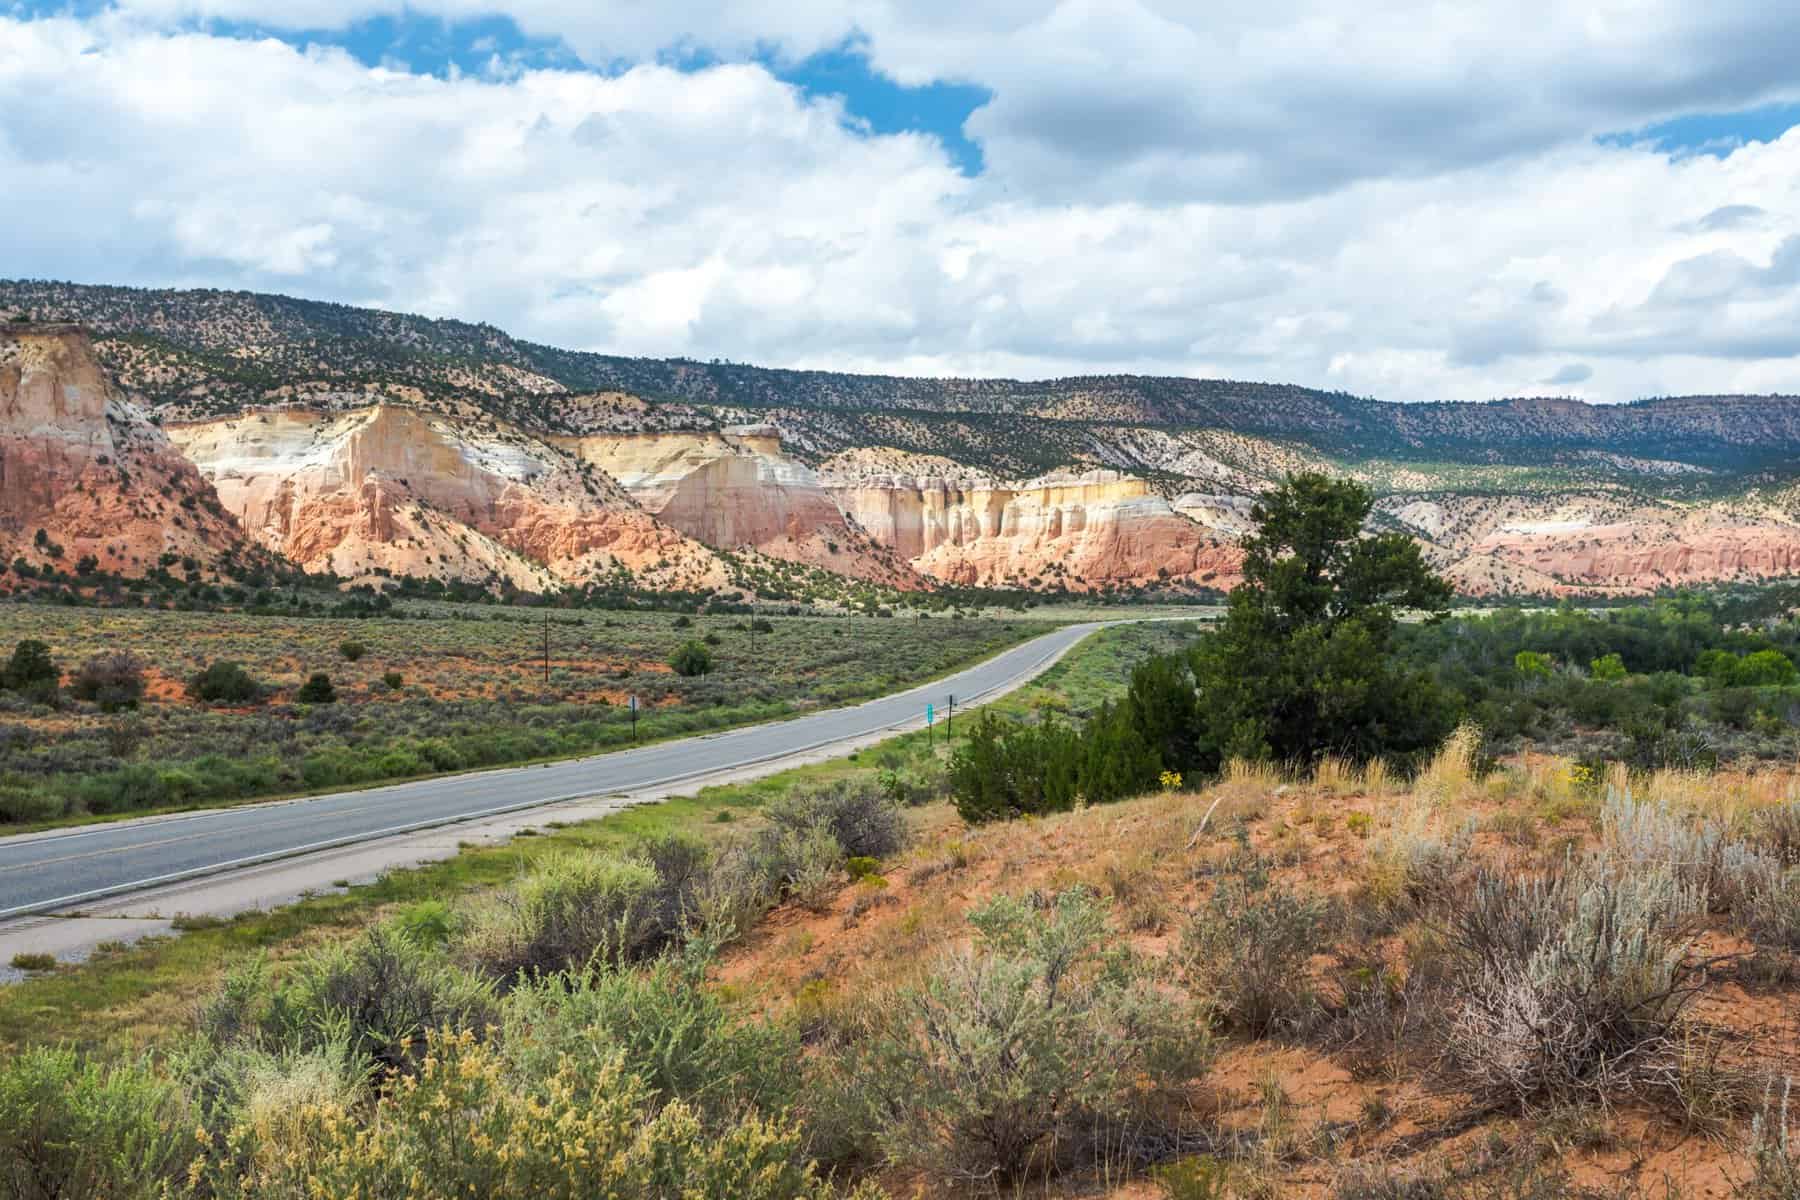 New Mexico boondocking desert scene (Image; Shutterstock)